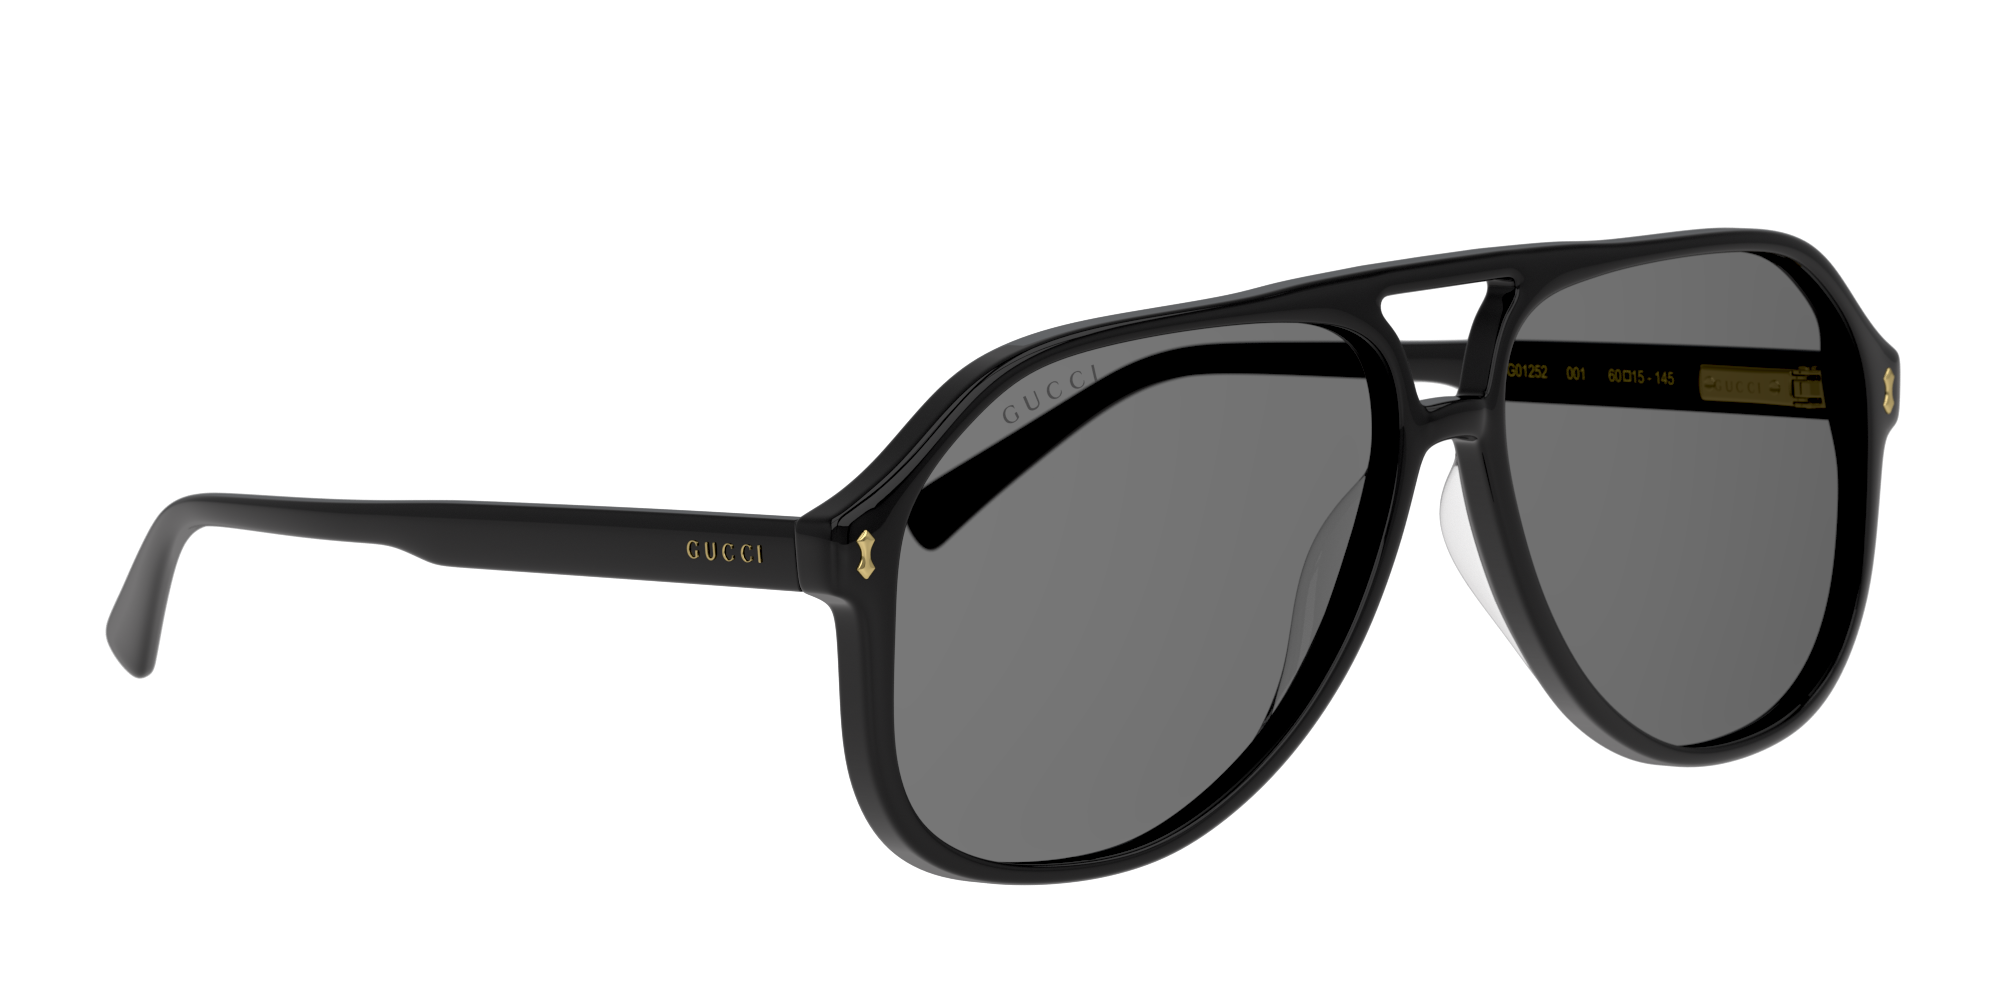 Angle_Right01 Gucci GG 1042S Sunglasses Grey / Black